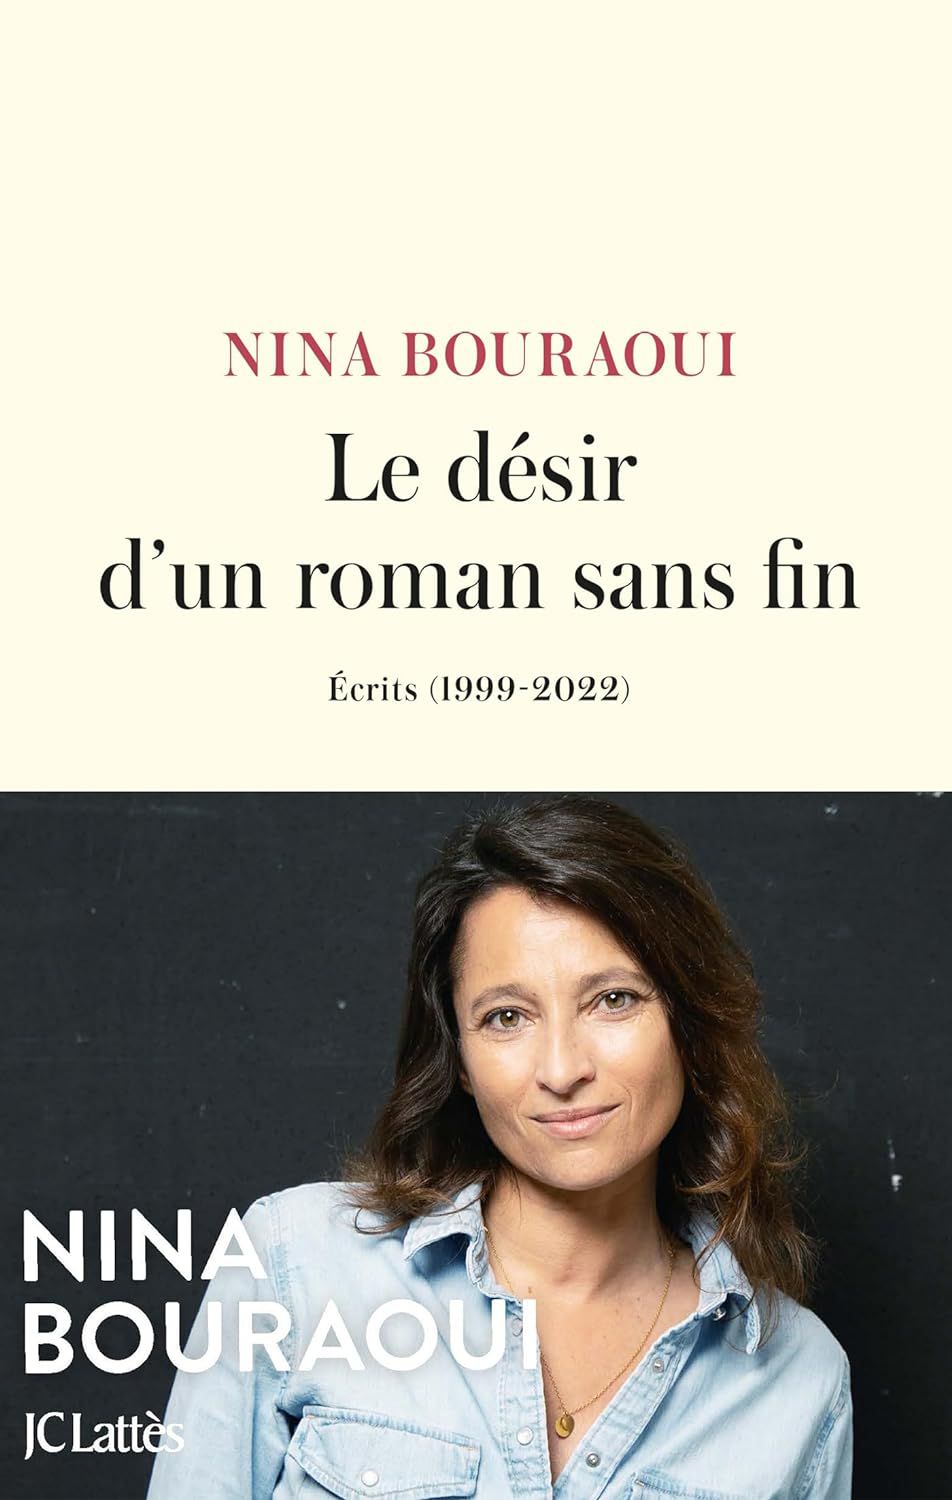  Le désir d'un roman sans fin, de Nina Bouraoui